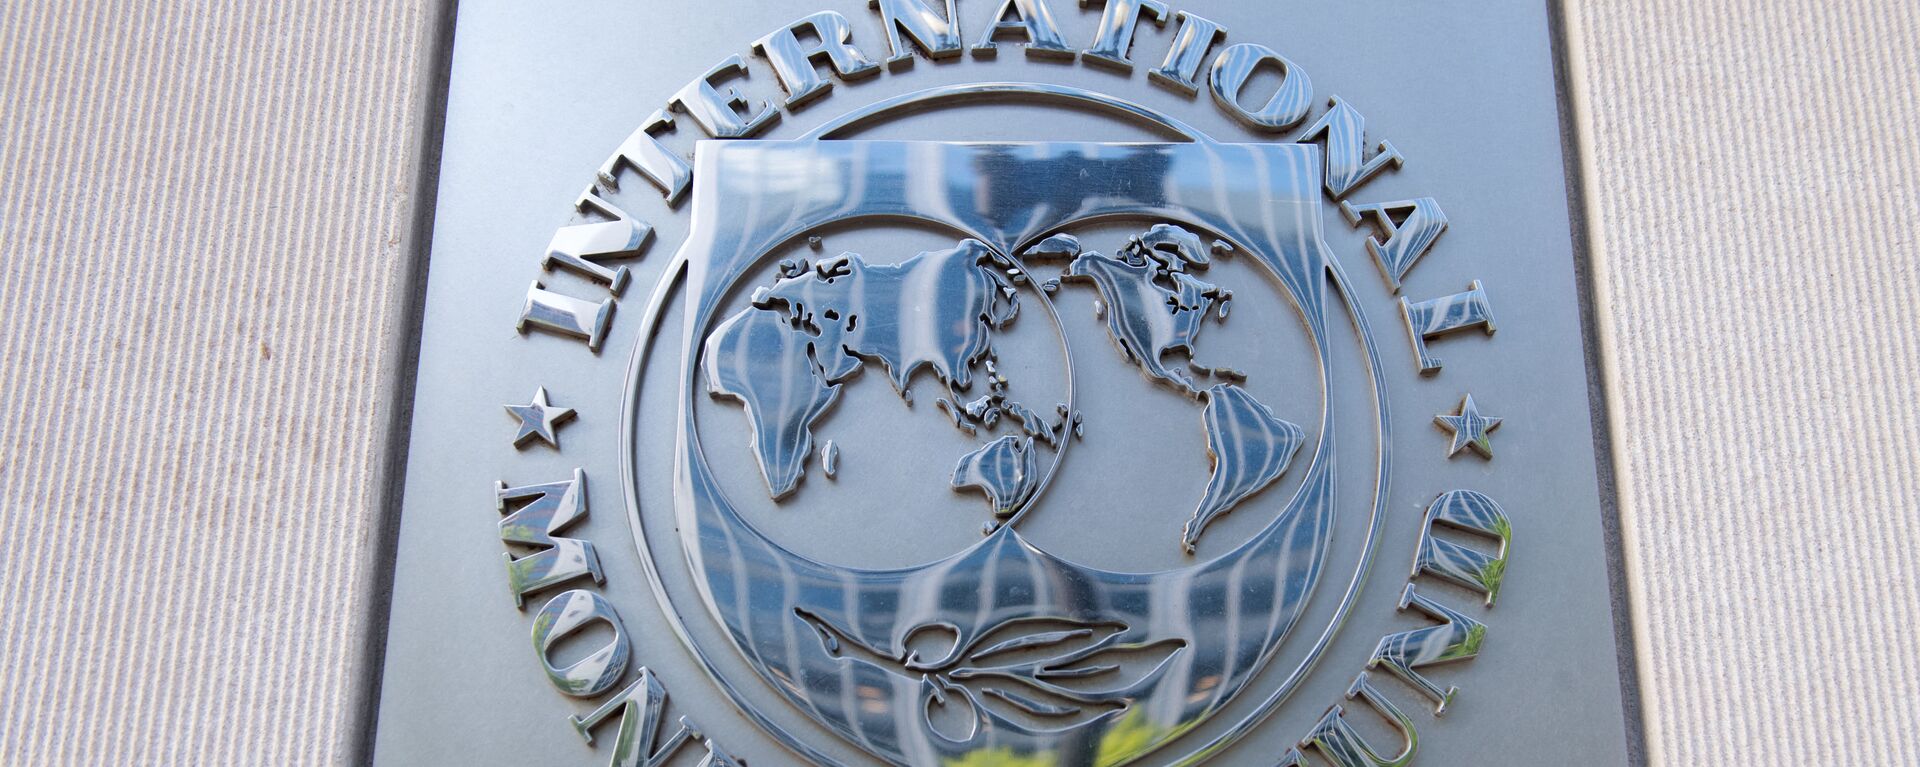 Табличка на здании штаб-квартиры Международного валютного фонда (МВФ) - Sputnik Беларусь, 1920, 12.10.2021